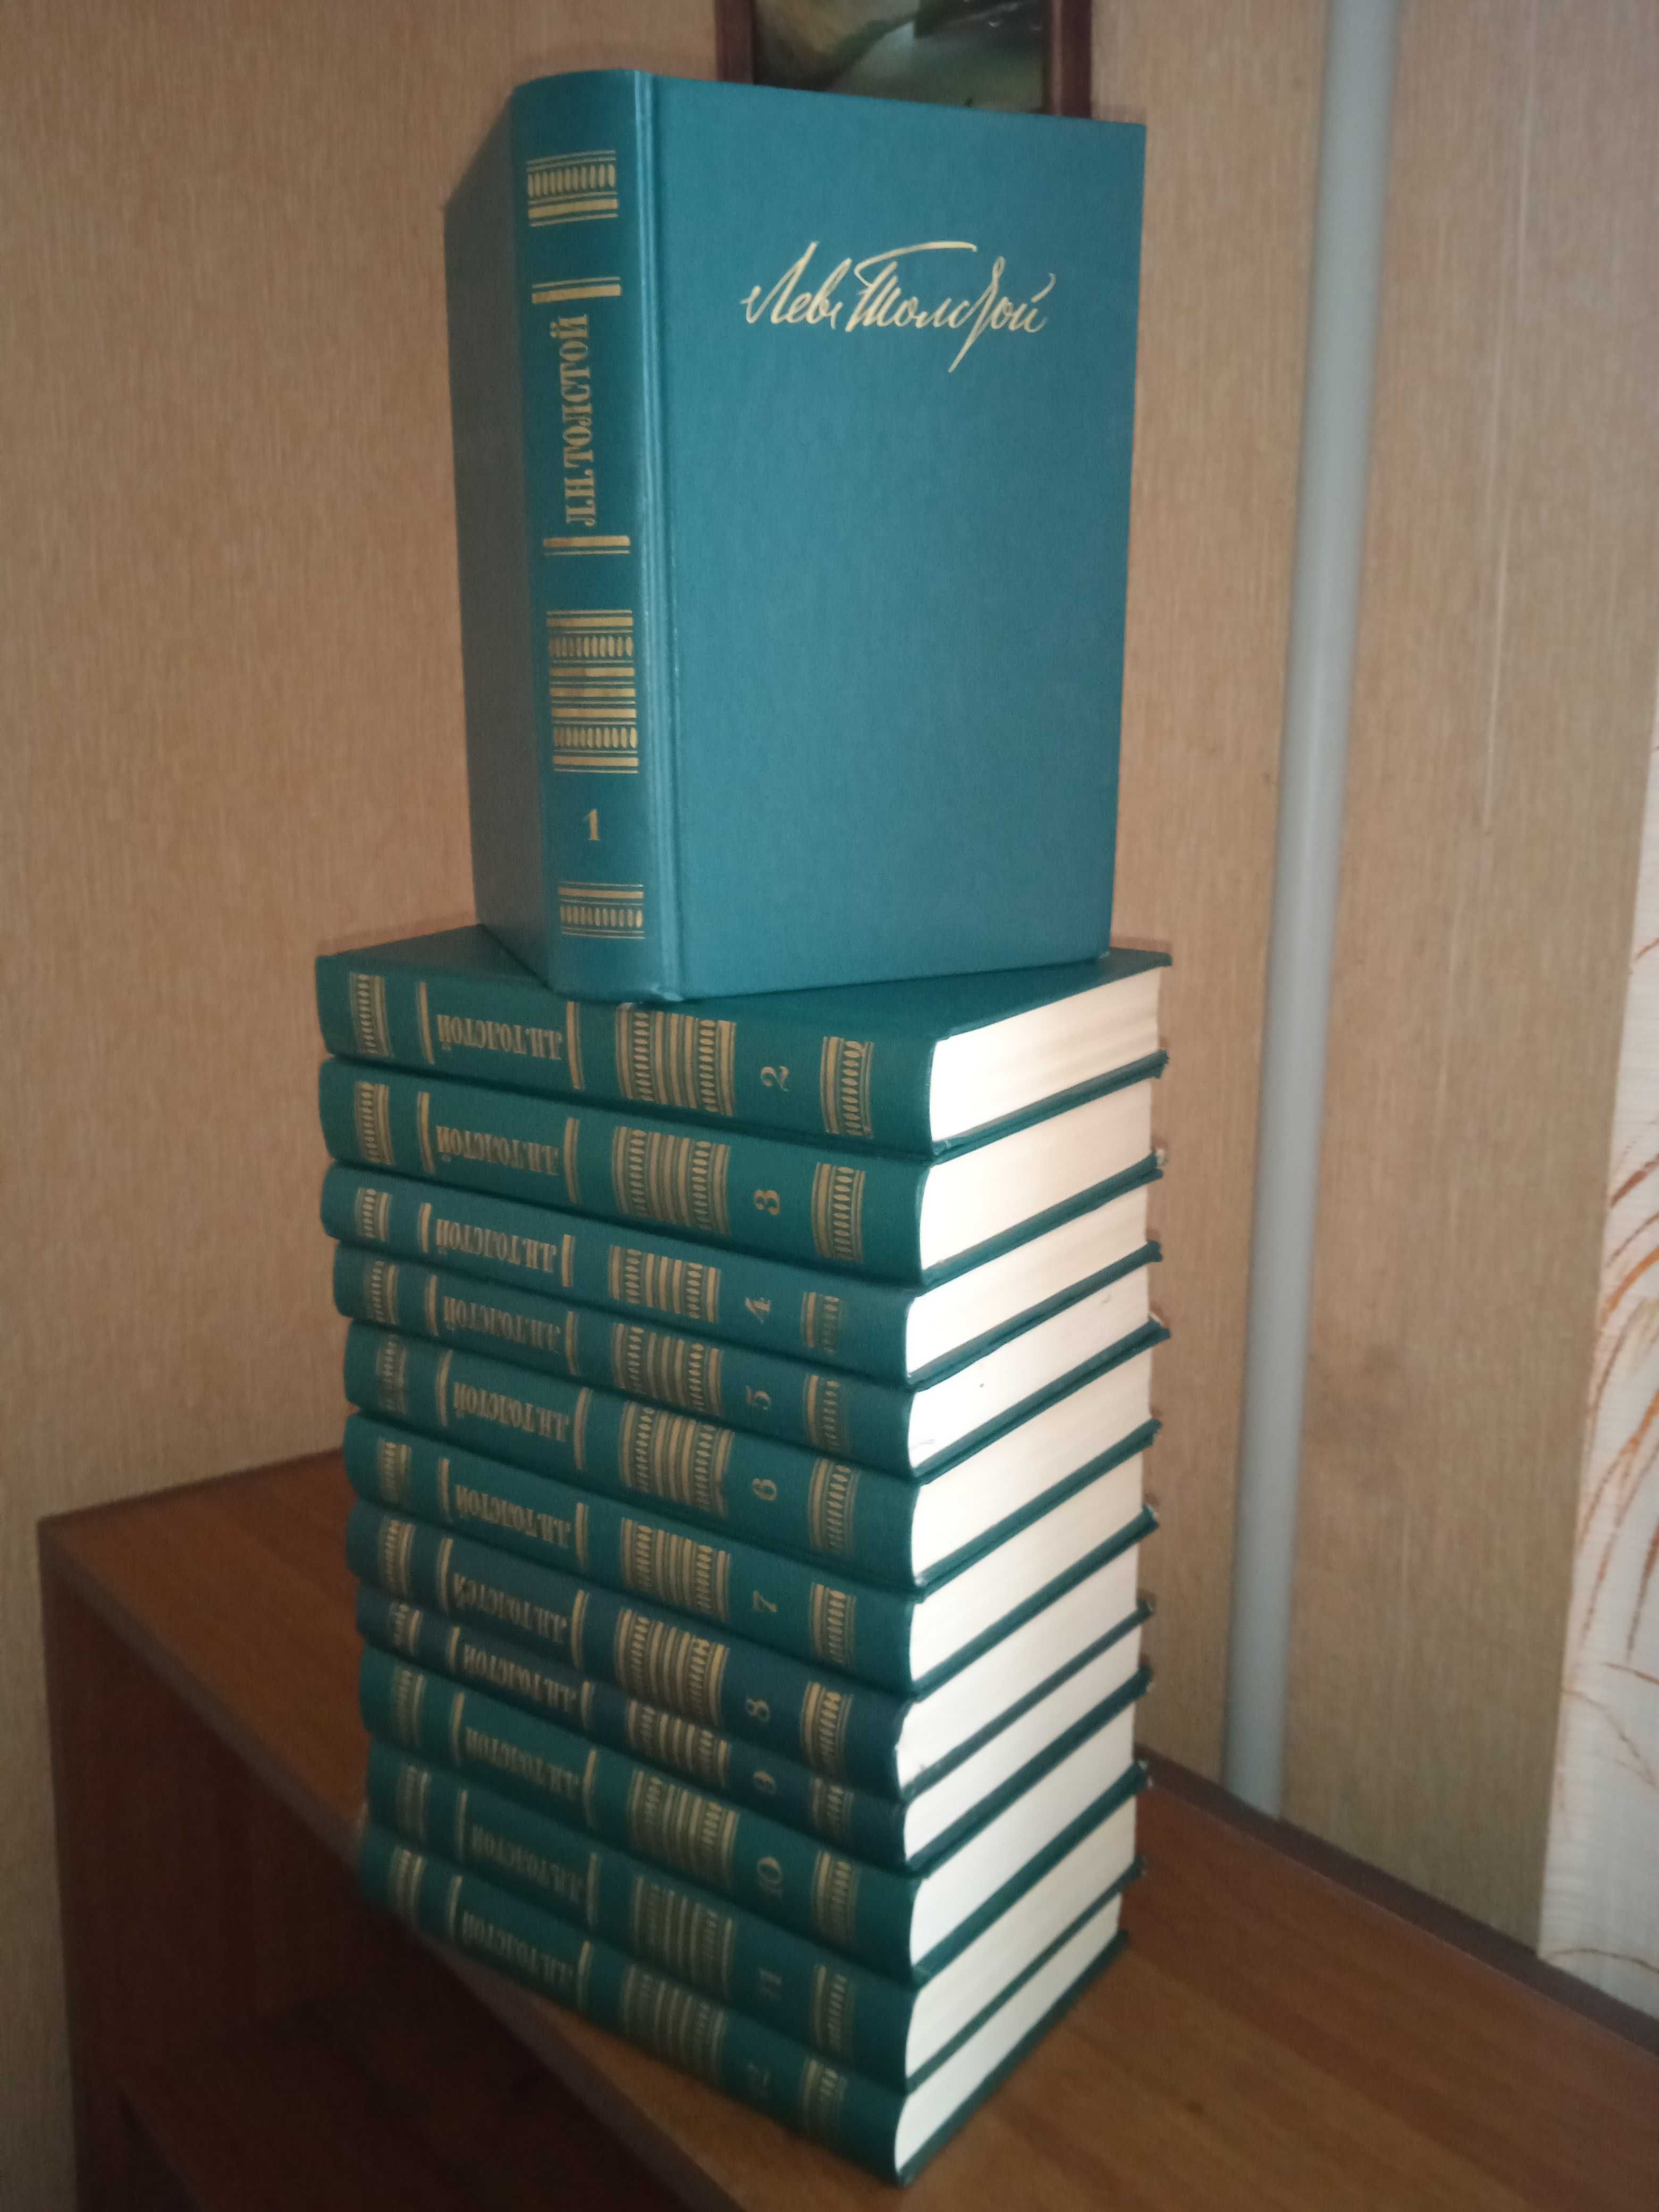 Толстой Л.Н. "Збірка творів у 12 томах". Видавництво 1987 року.